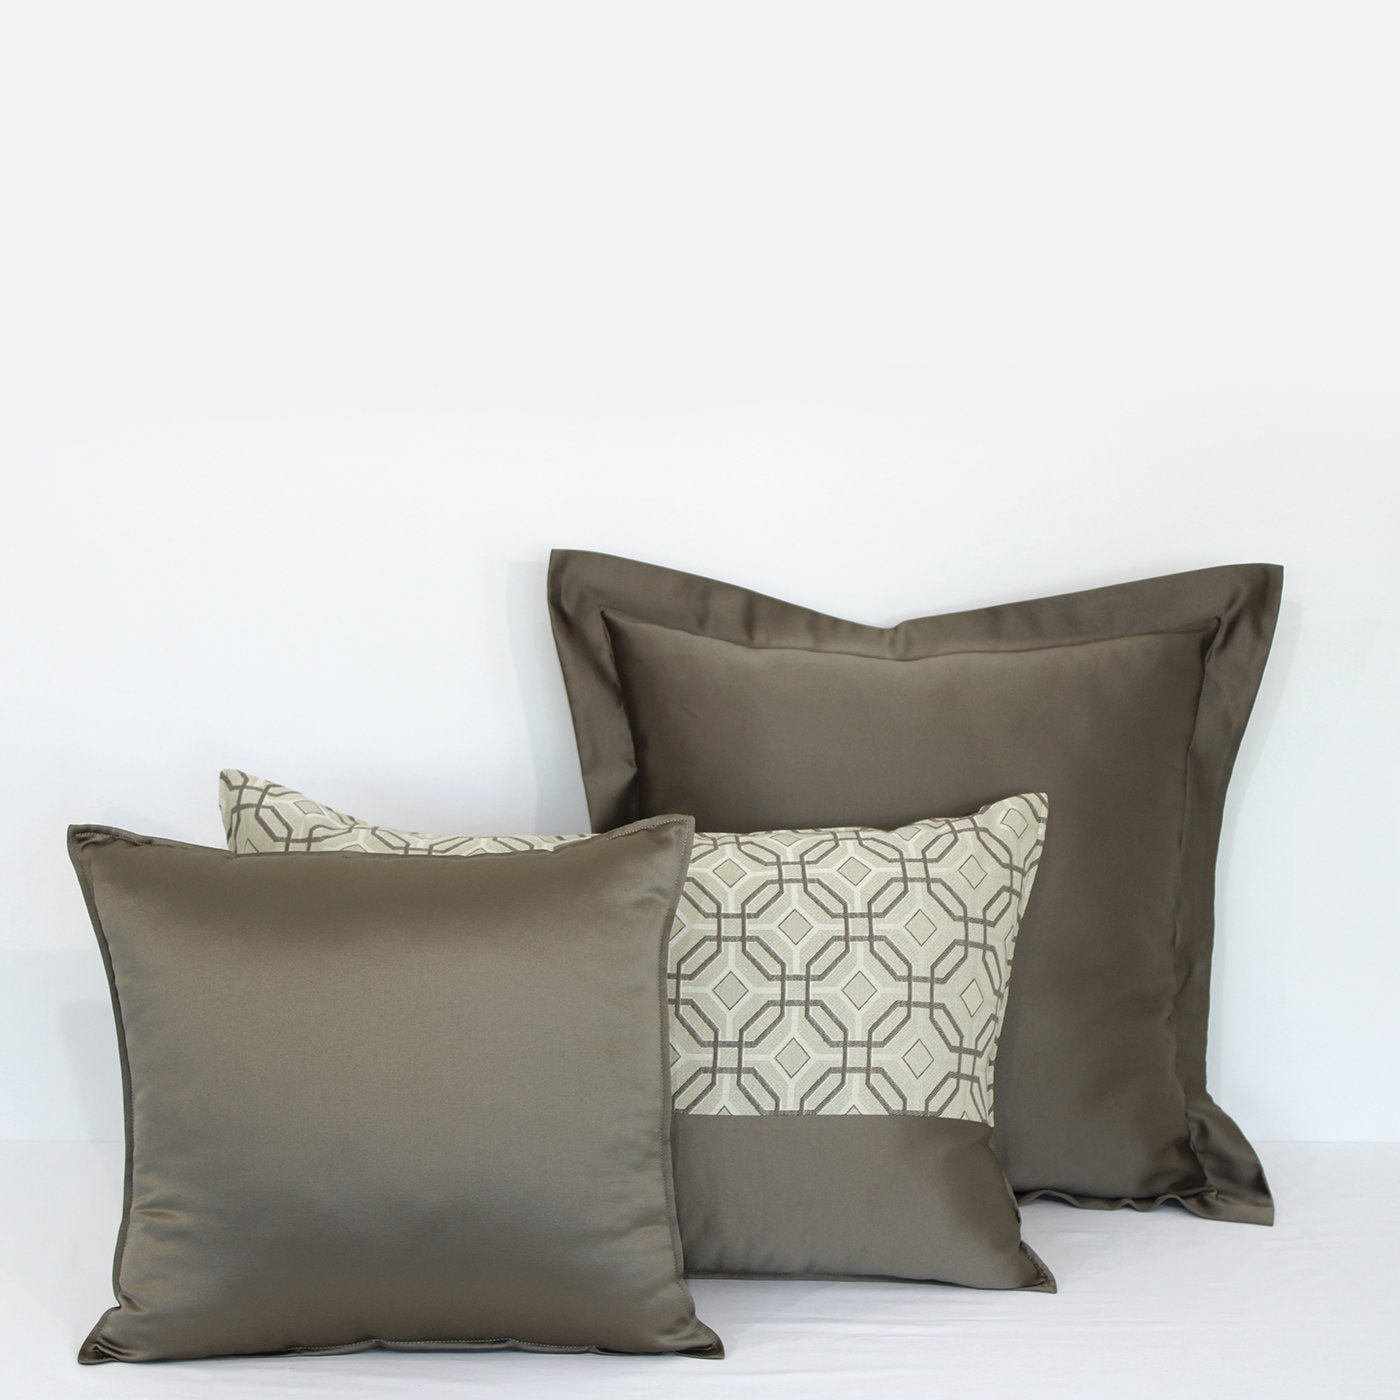 Sorrento Set of 2 Pillows - Alternative view 1